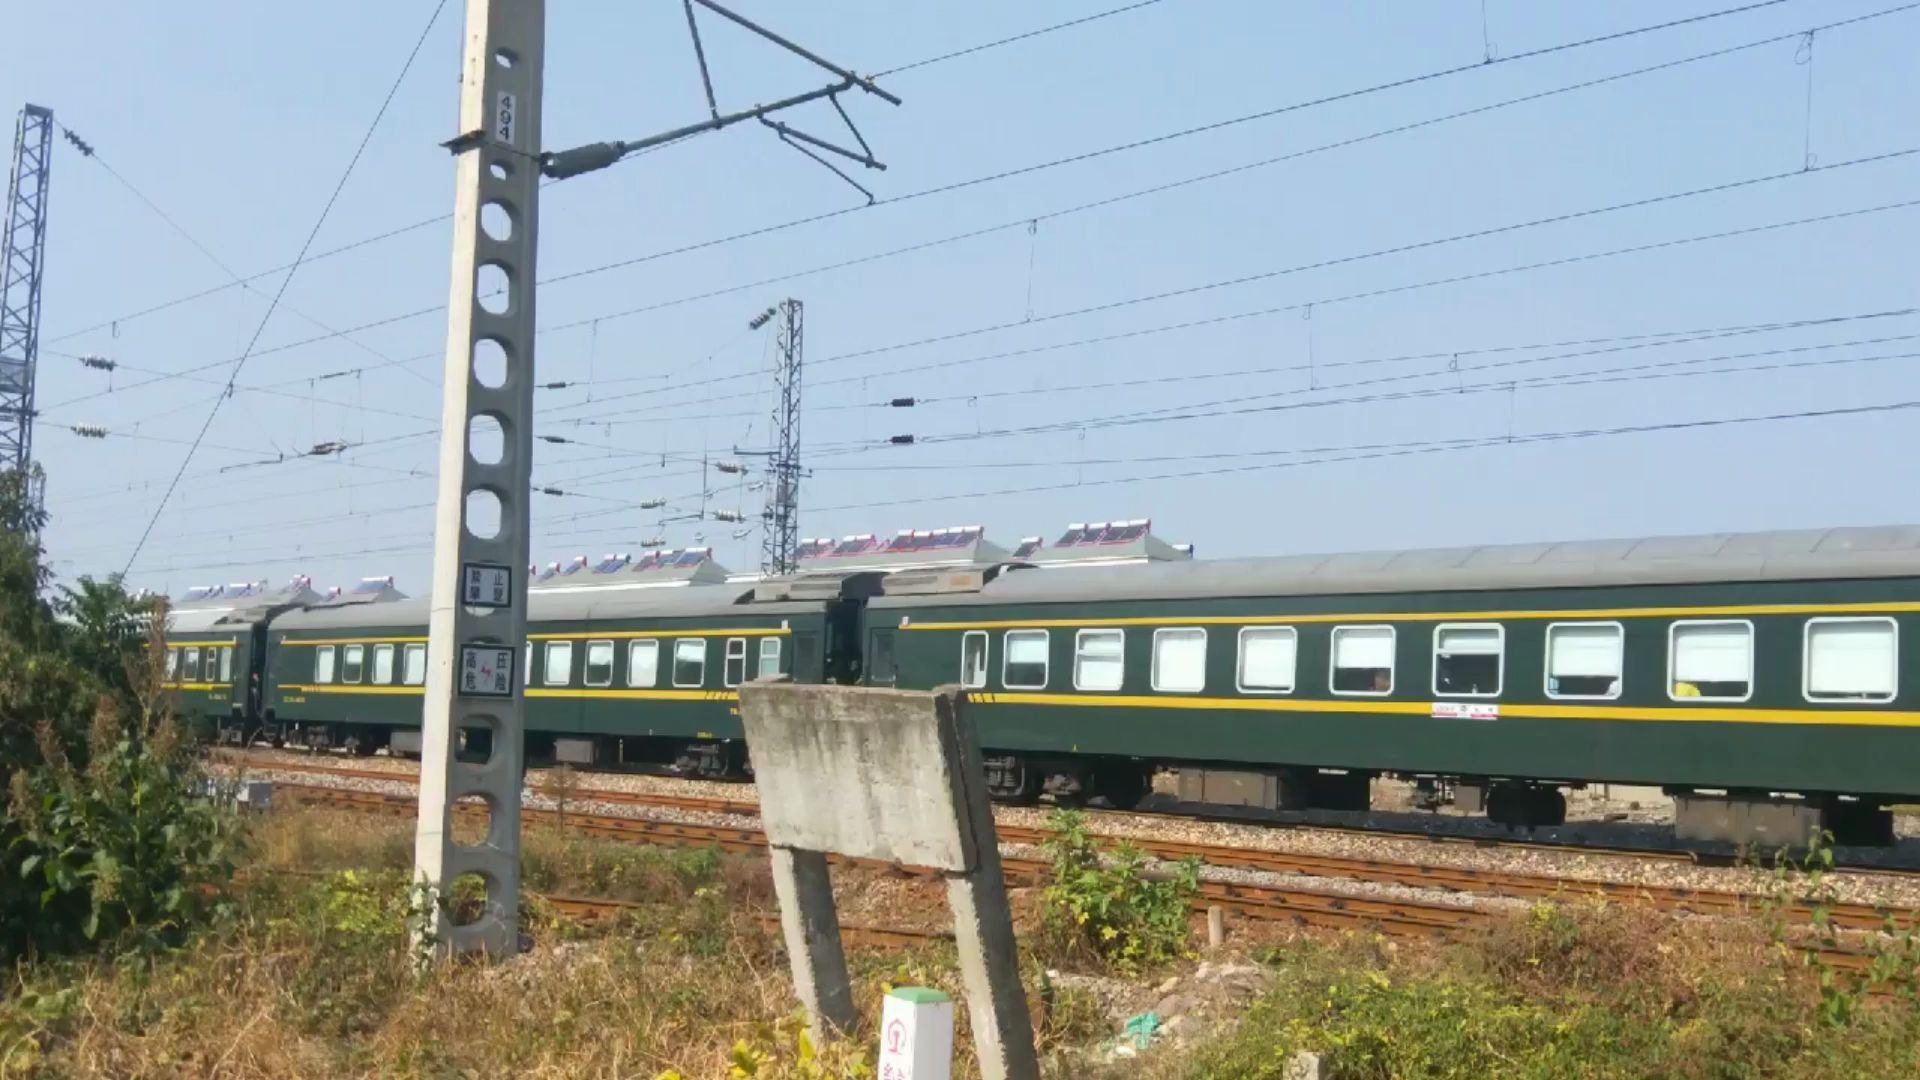 和谐电hxd1d牵引乌鲁木齐至杭州k593次列车驶过阜淮铁路淮南西站